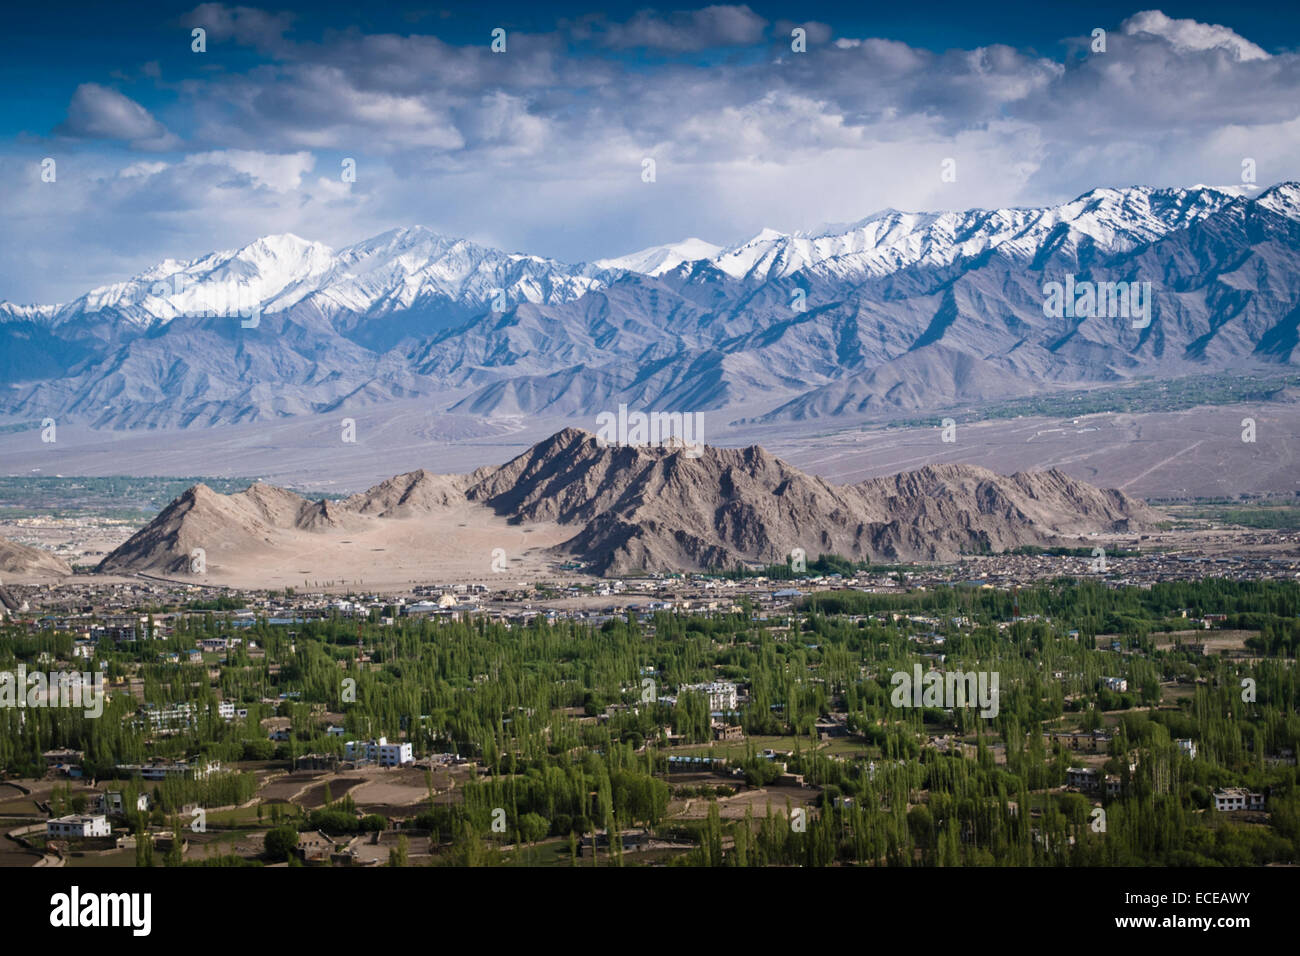 India, Ladakh, Leh, View of mountain range Stock Photo